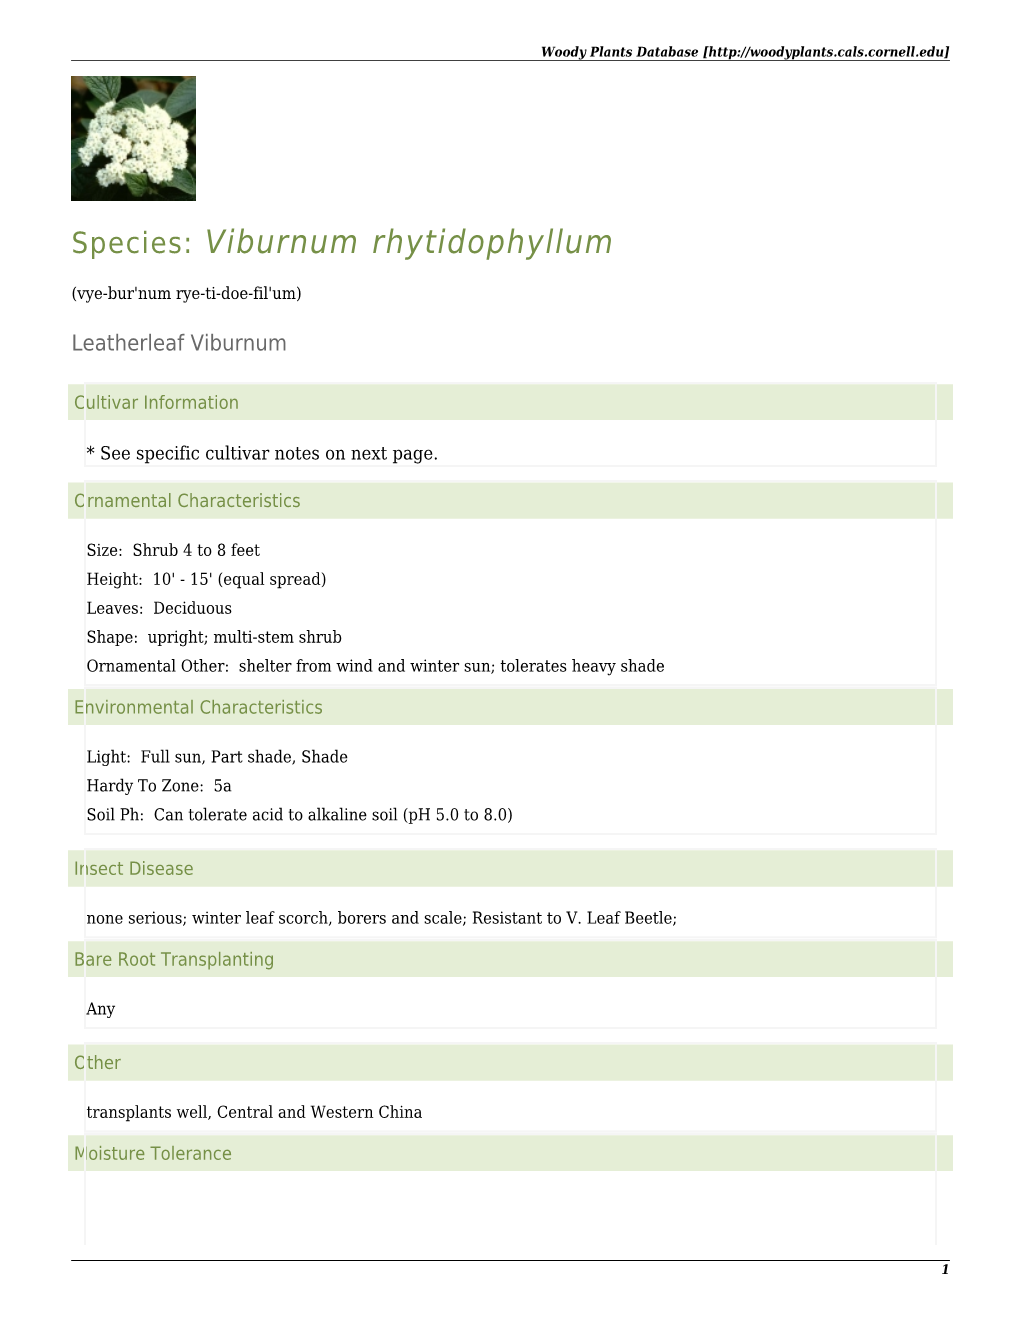 Viburnum Rhytidophyllum